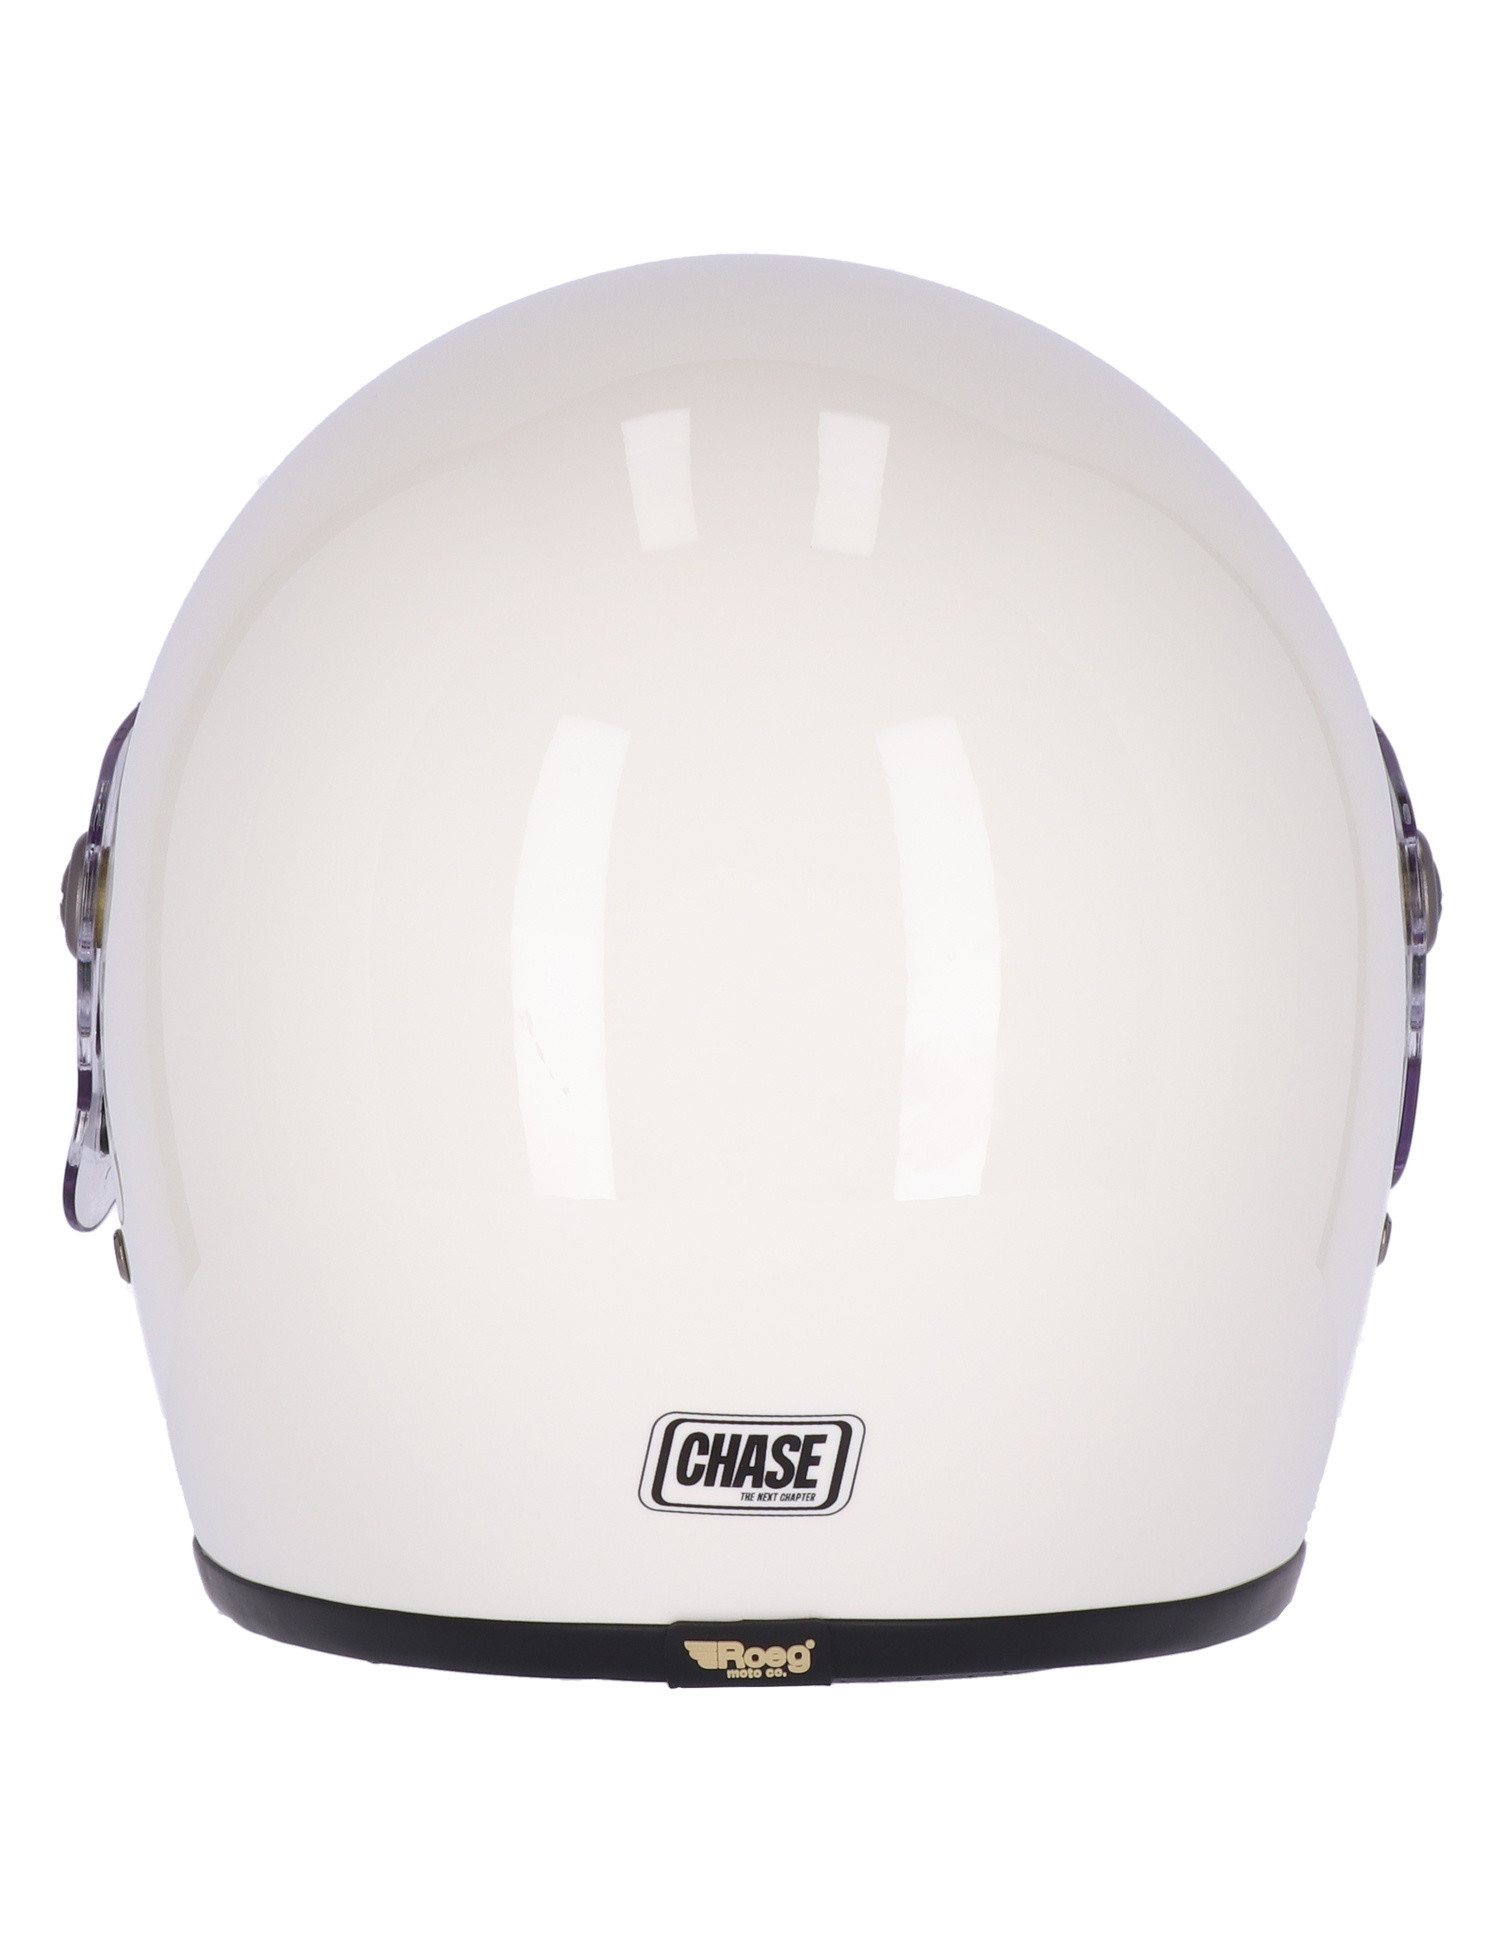 Roeg Chase Helmet vintage white